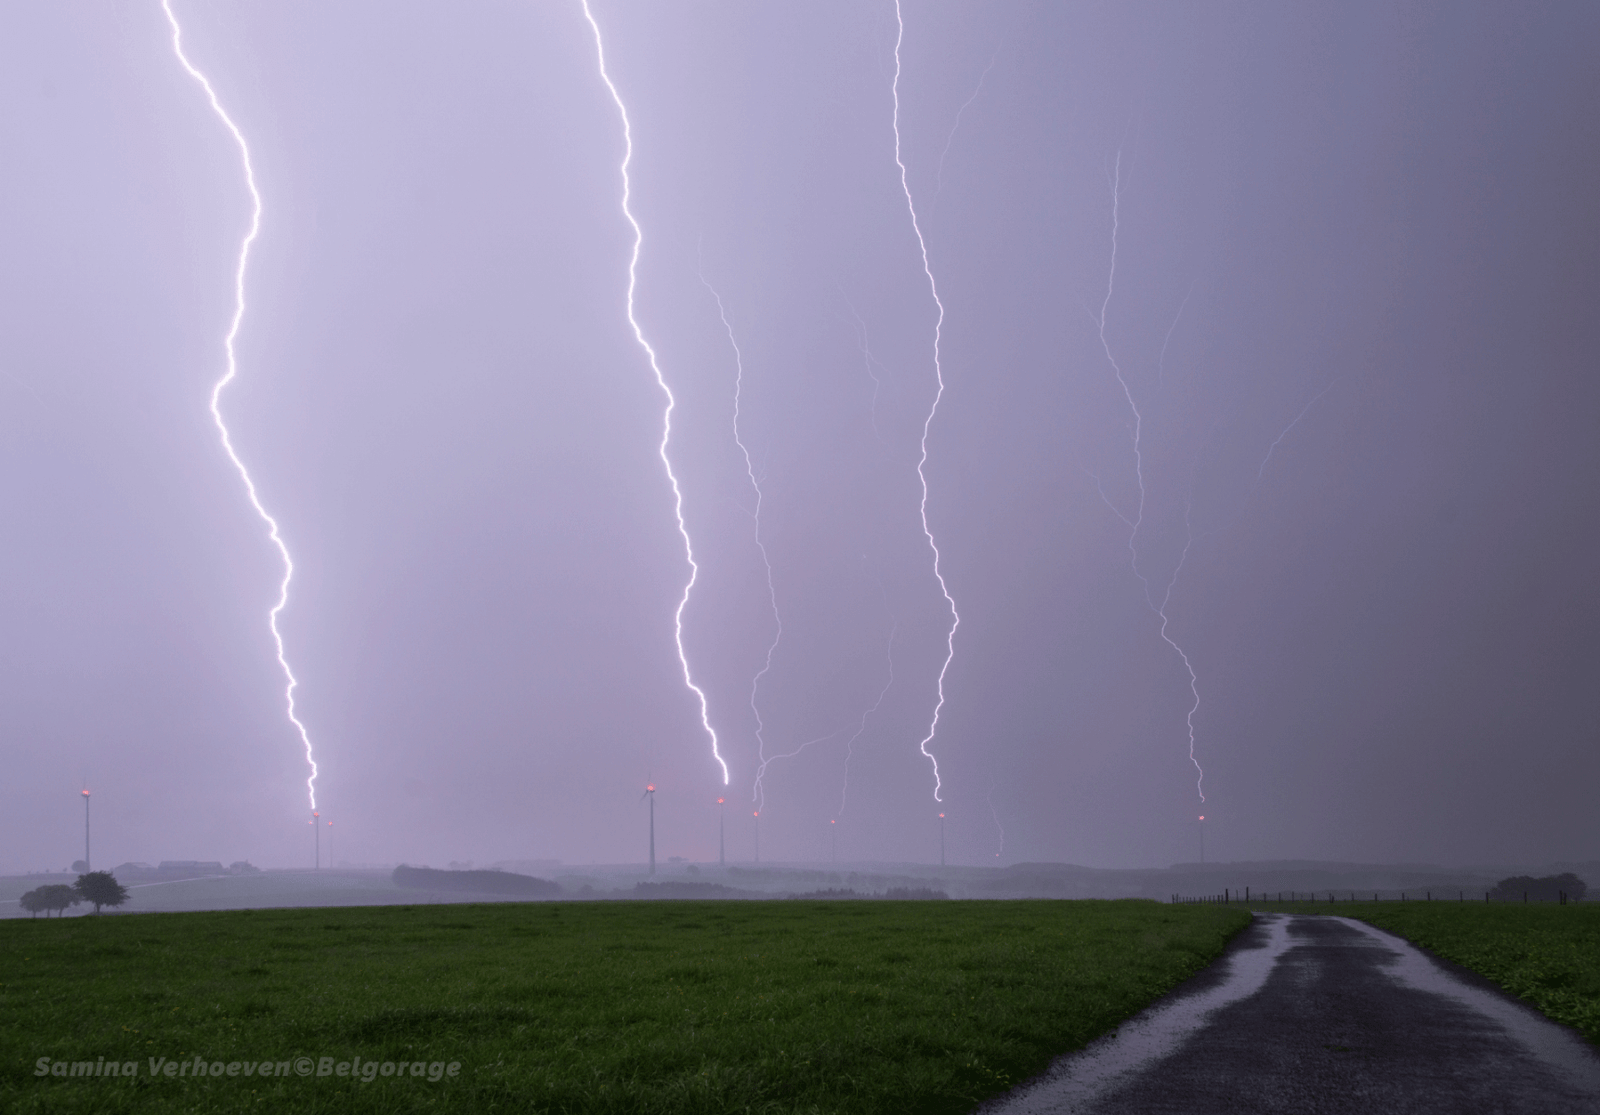 Série de coups de foudre ayant simultanément frappé un ensemble d'éolienne dans la région de Heiderscheid au Grand-Duché de Luxembourg, le 29 avril 2018 à 22h54. Crédit photo : Samina Verhoeven